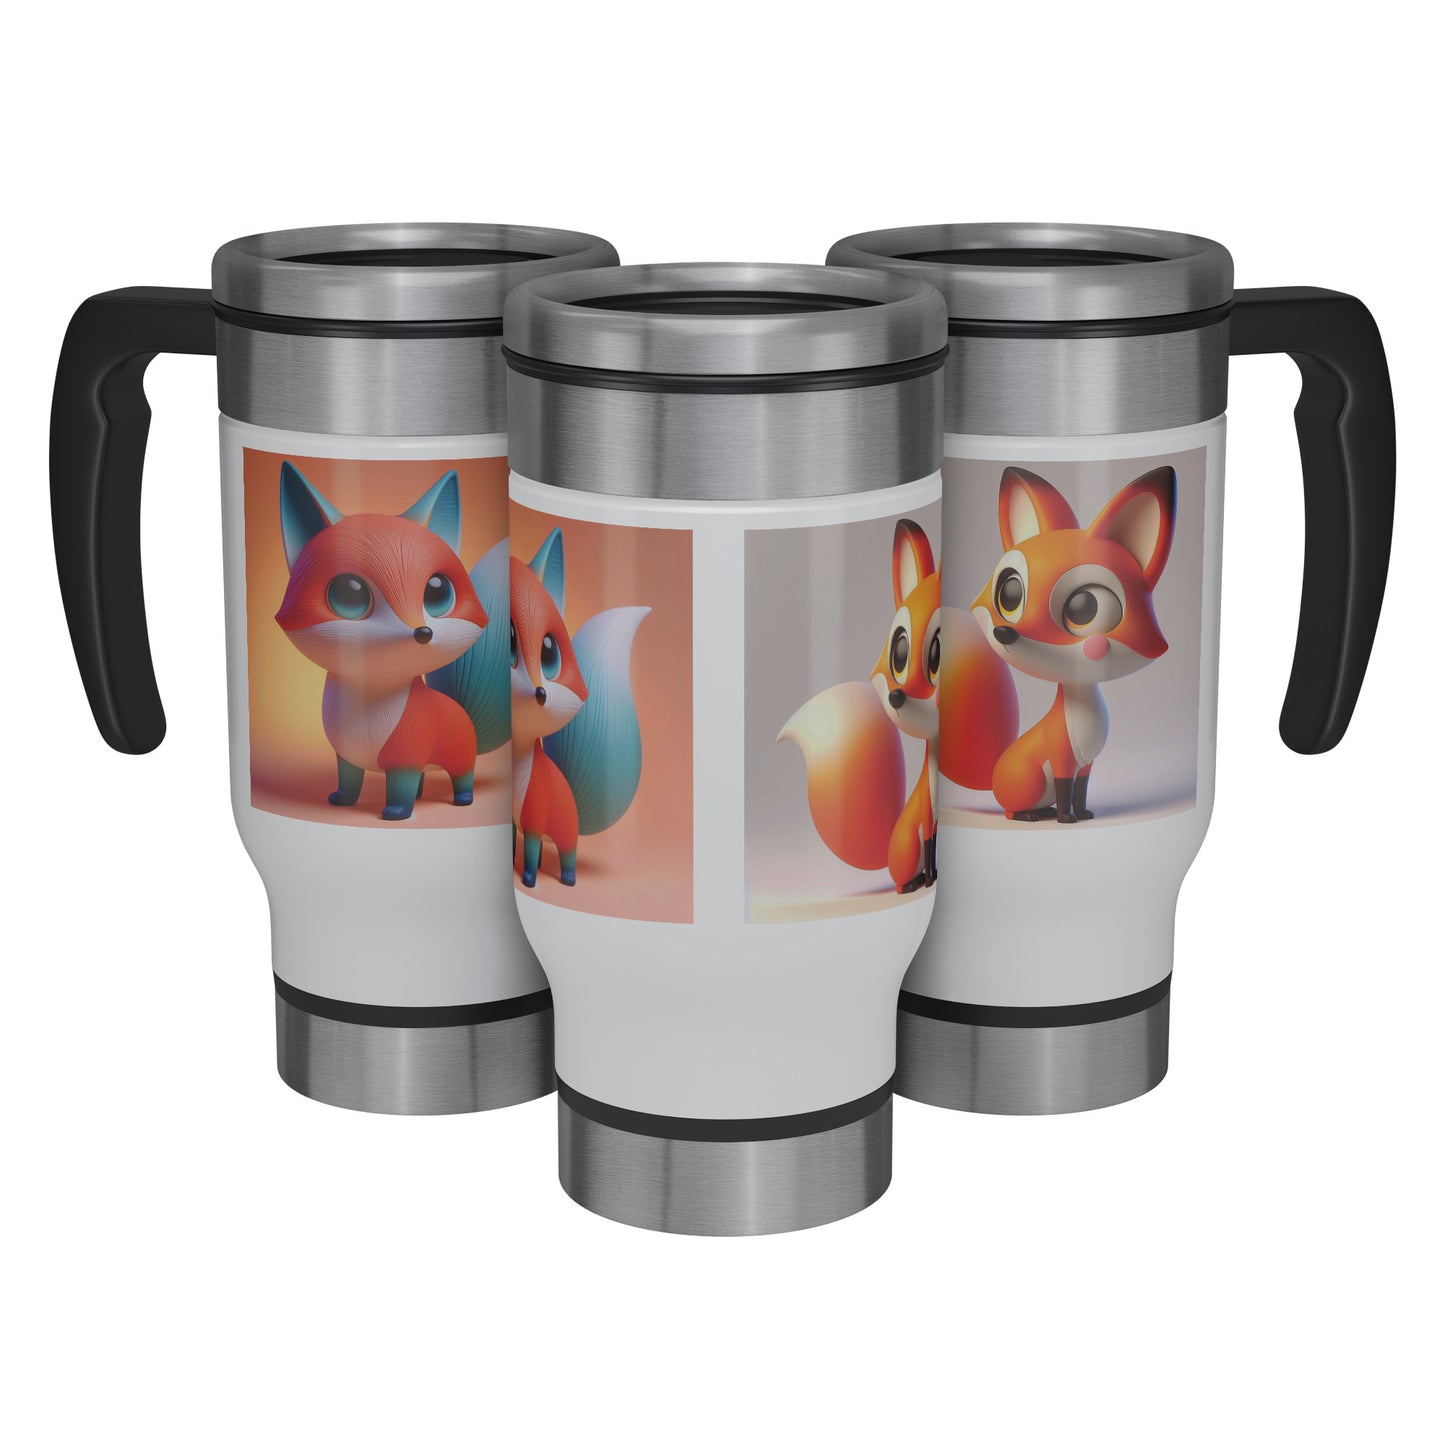 Cute & Adorable Mammals - 14oz Travel Mug - Fox #4